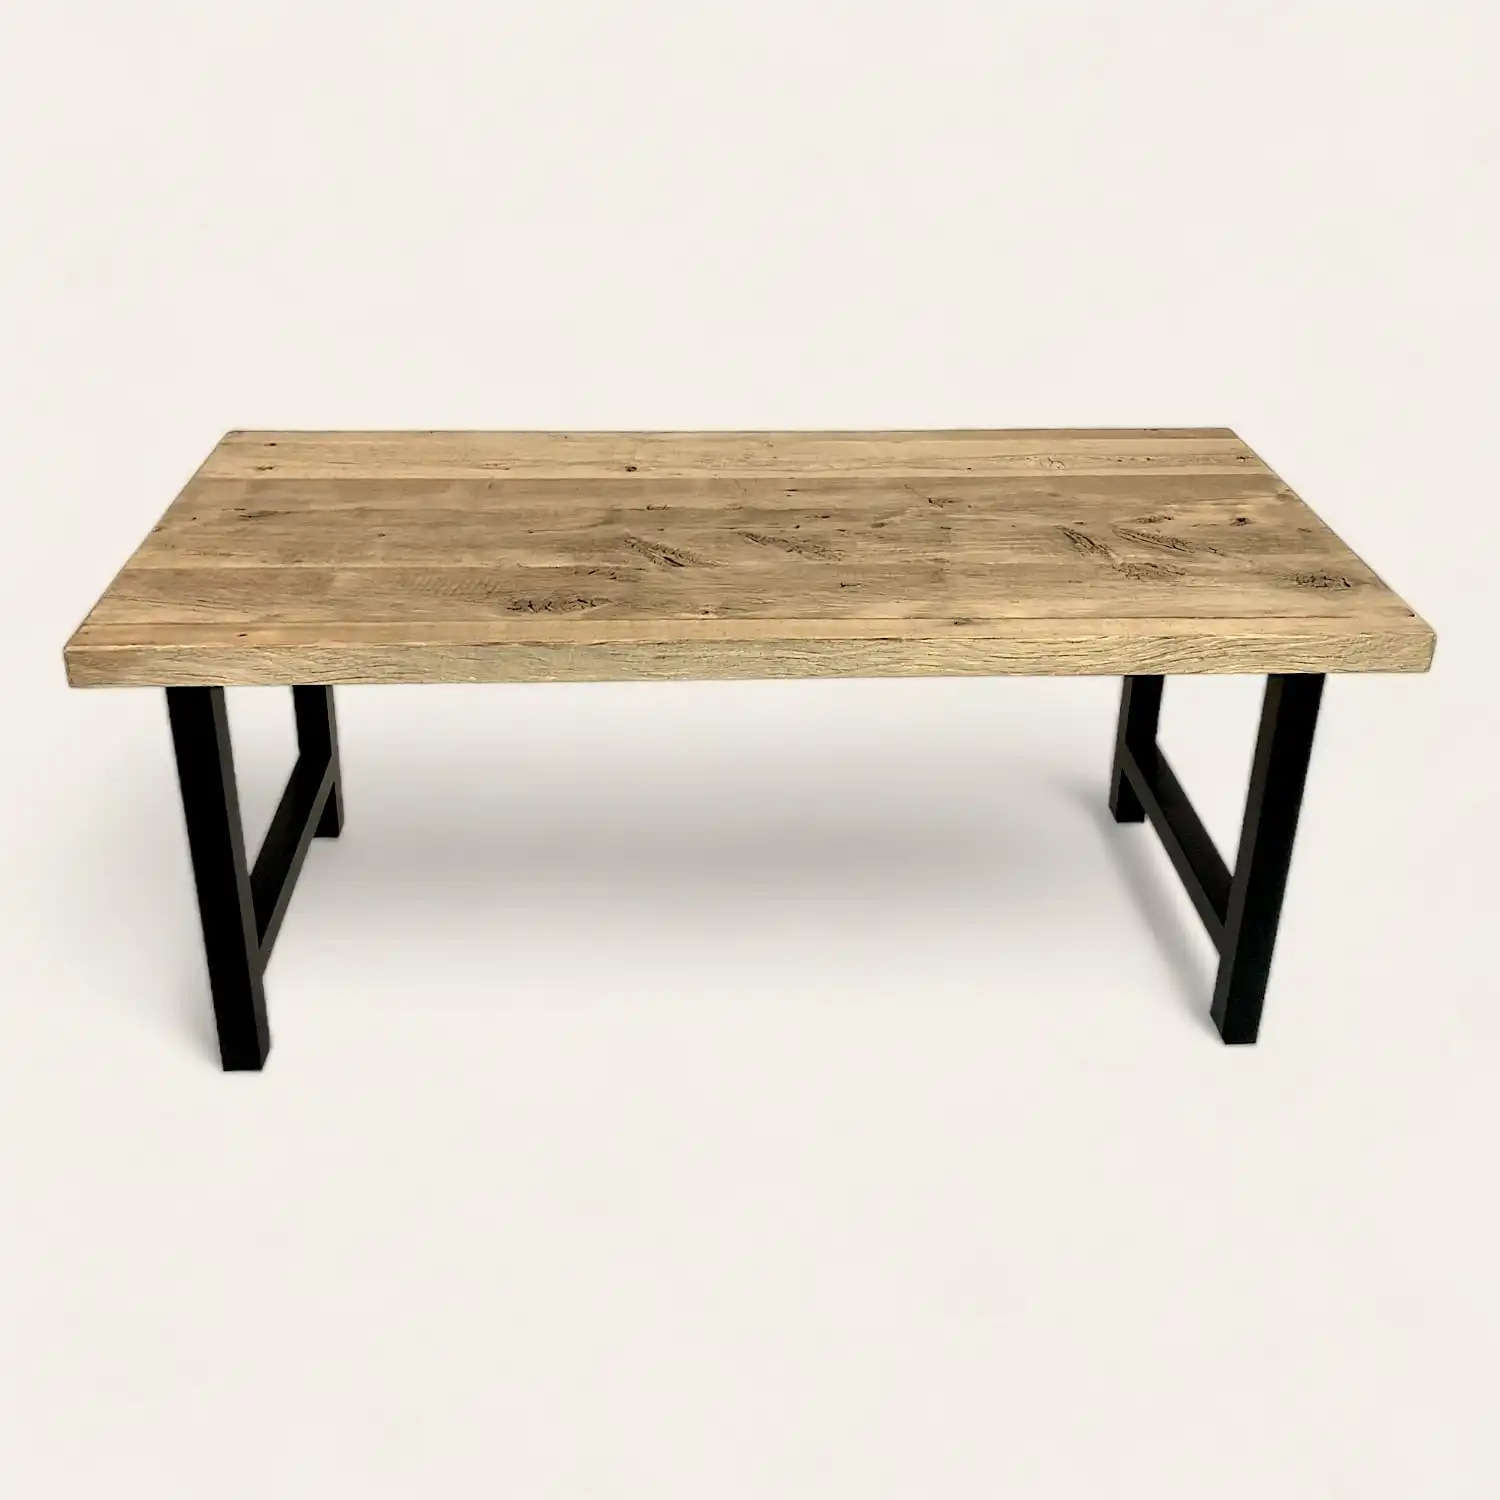  Une table à manger campagnarde en bois ancien avec des pieds noirs sur fond blanc. 